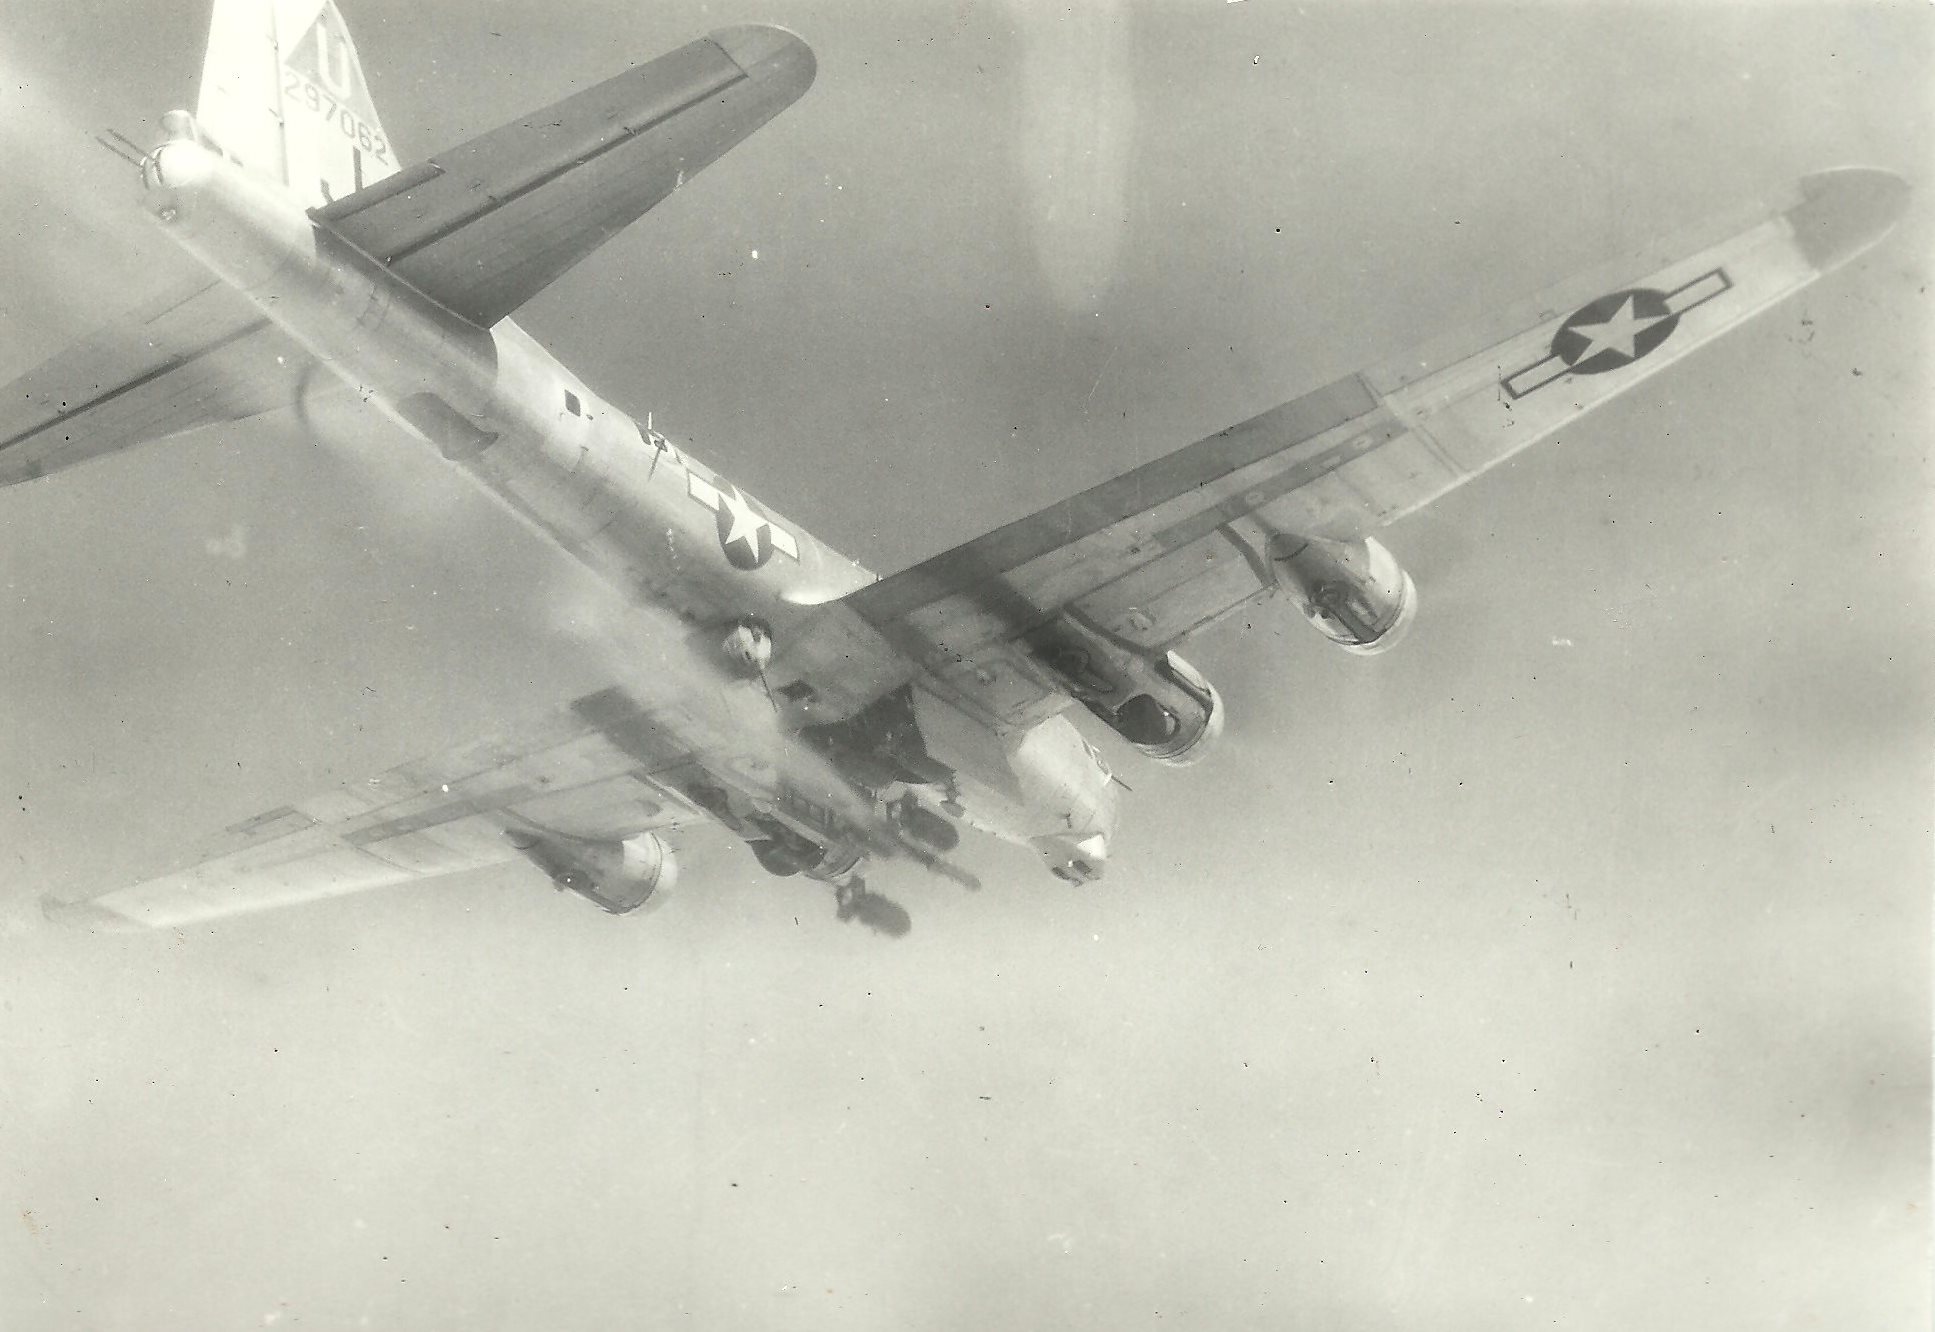 B-17 #42-97062